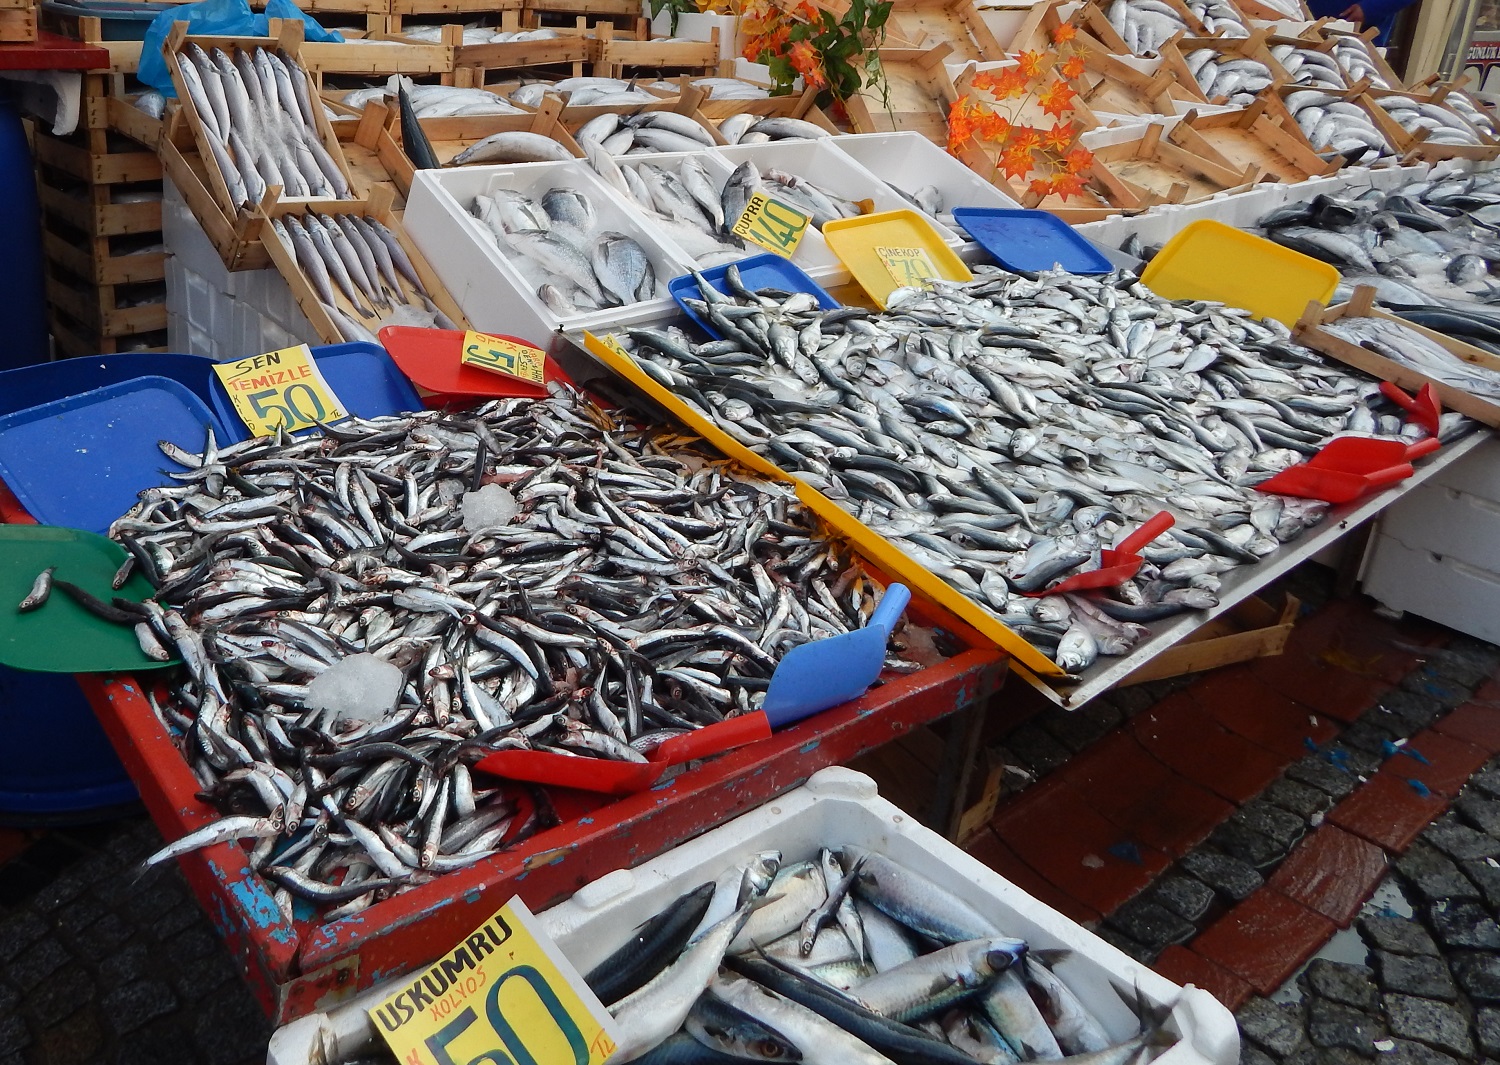 Morské ryby sú výdatným prirodzeným zdrojom omega-3 mastných kyselin. Kredit: OSEL.